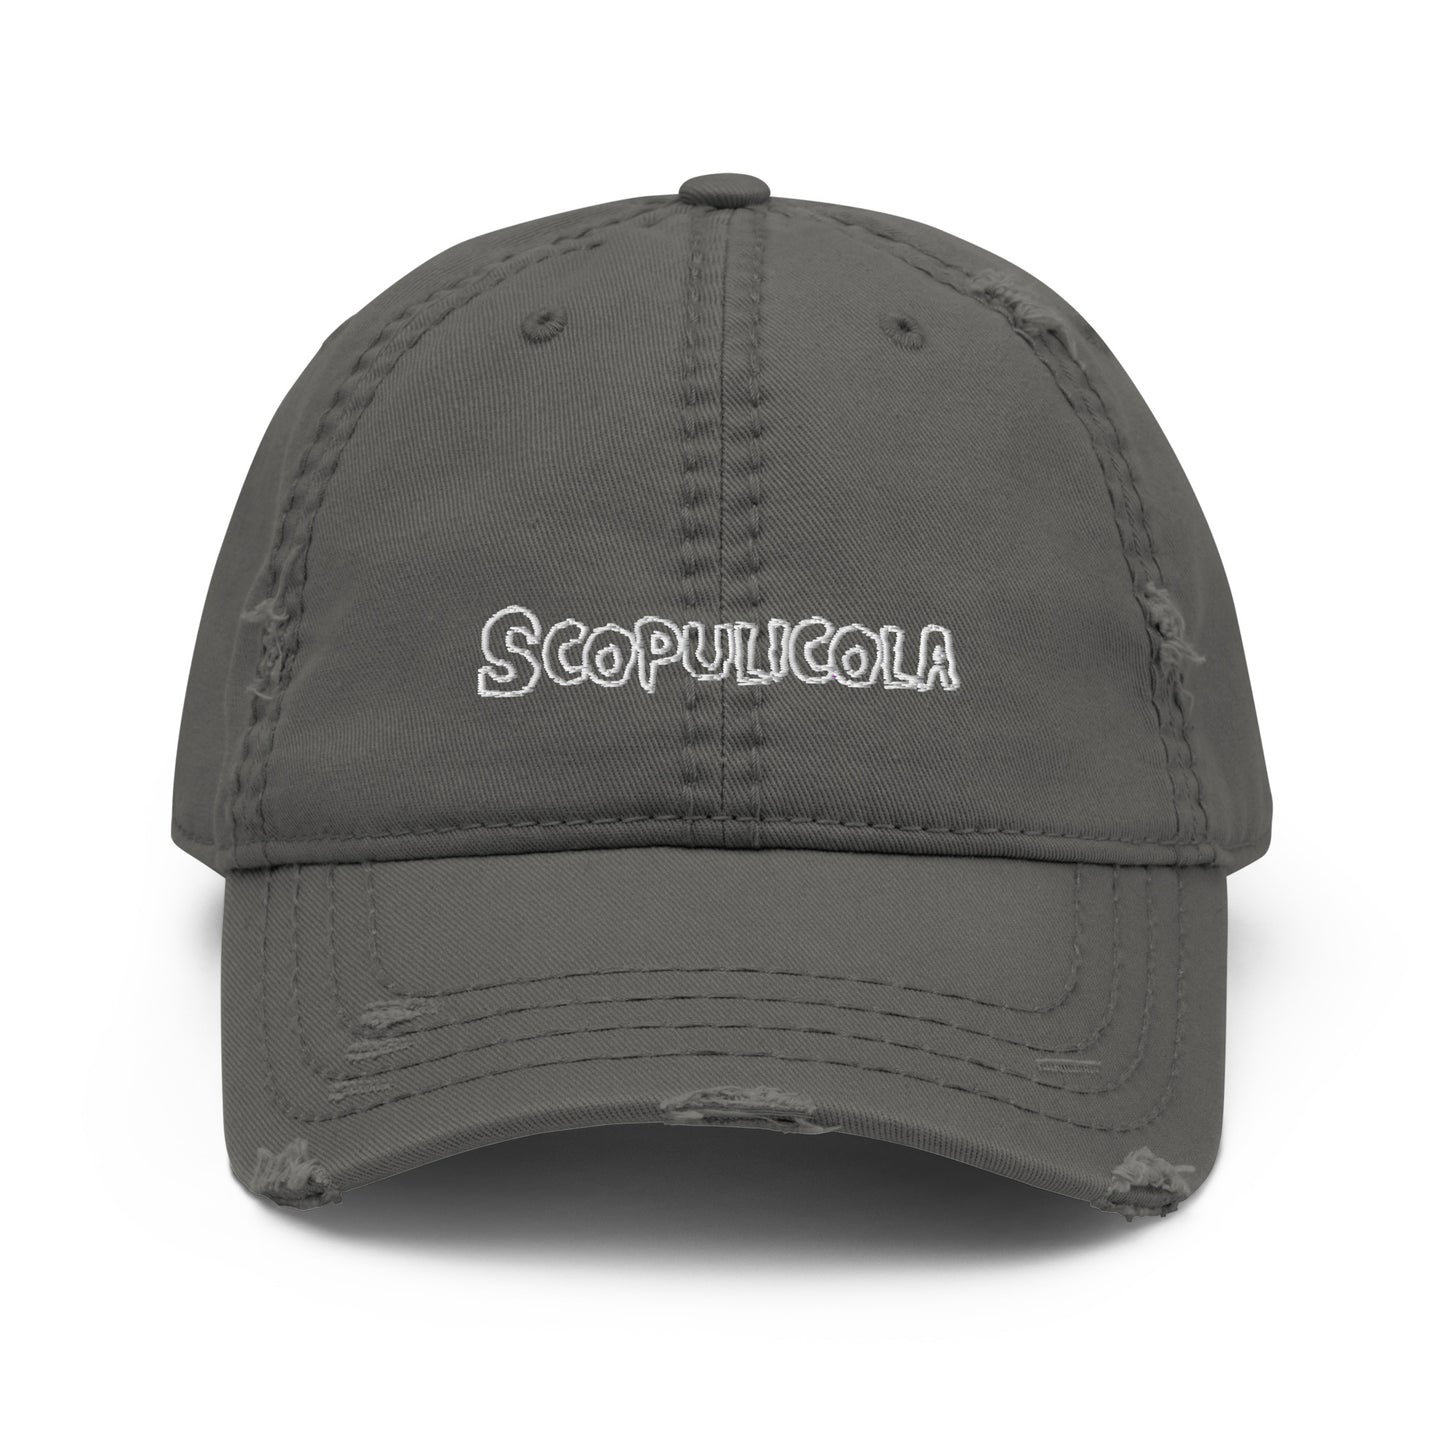 Scopulicola Distressed Dad Hat